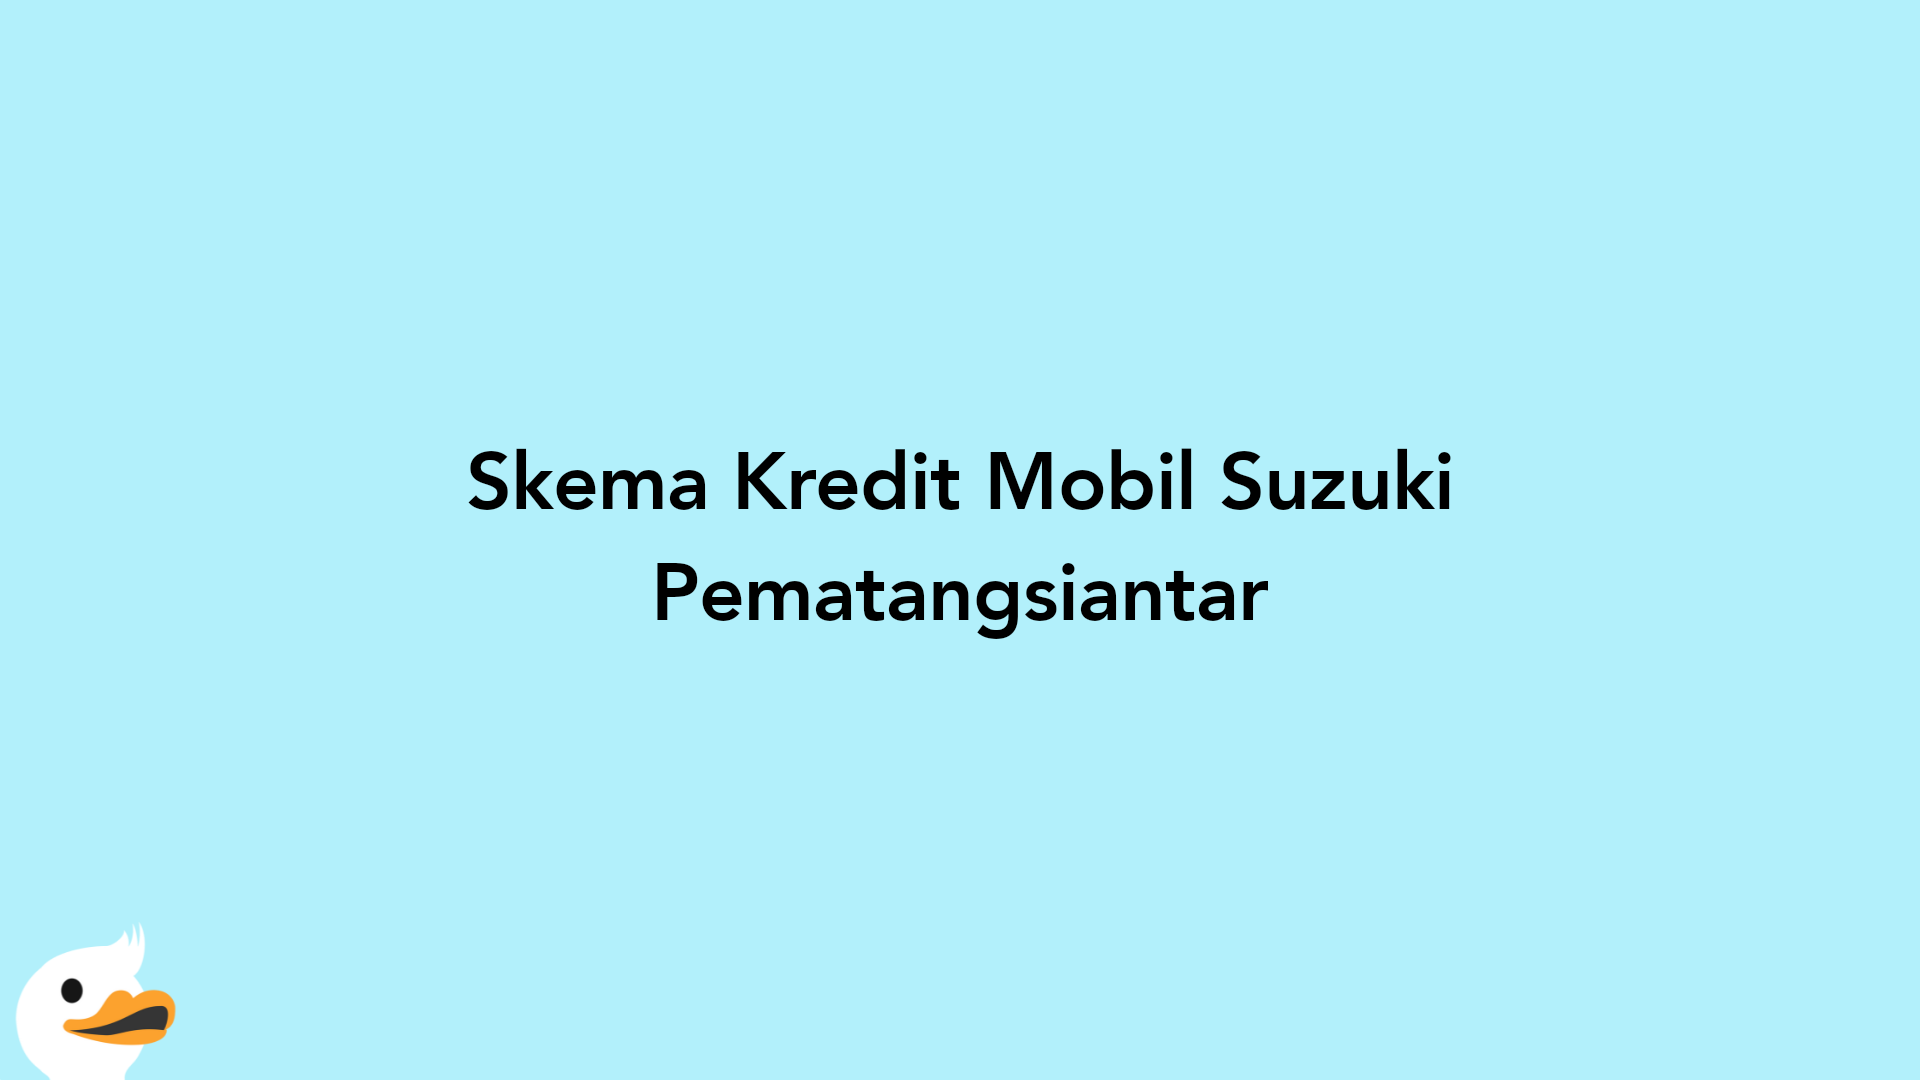 Skema Kredit Mobil Suzuki Pematangsiantar